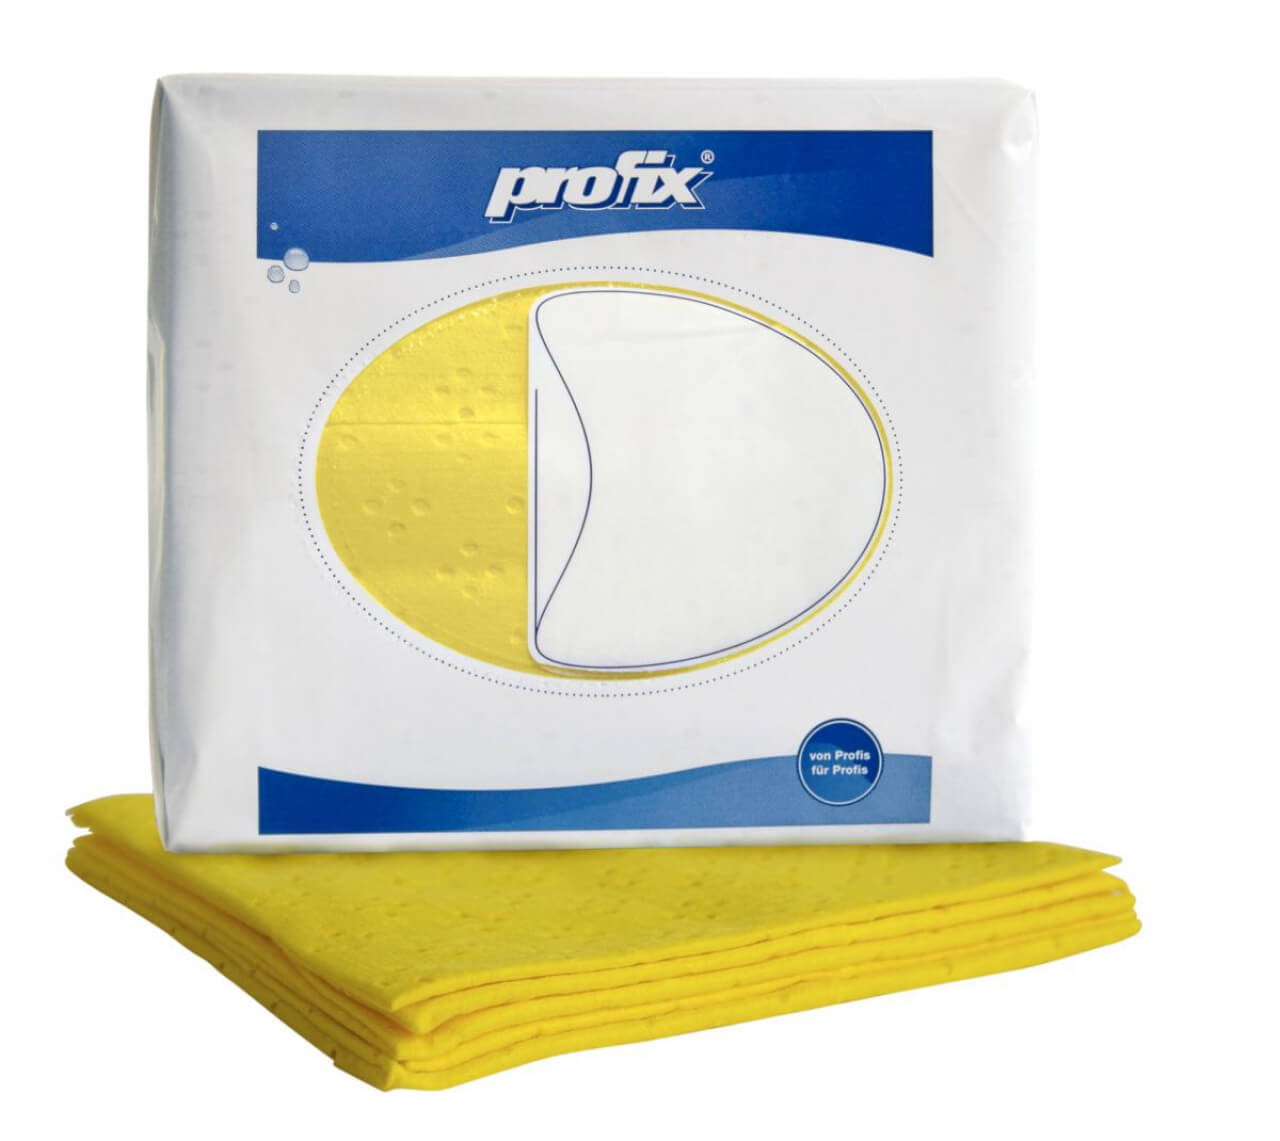 Profix élelmiszeriparban használható színkódolt törlőkendő sárga